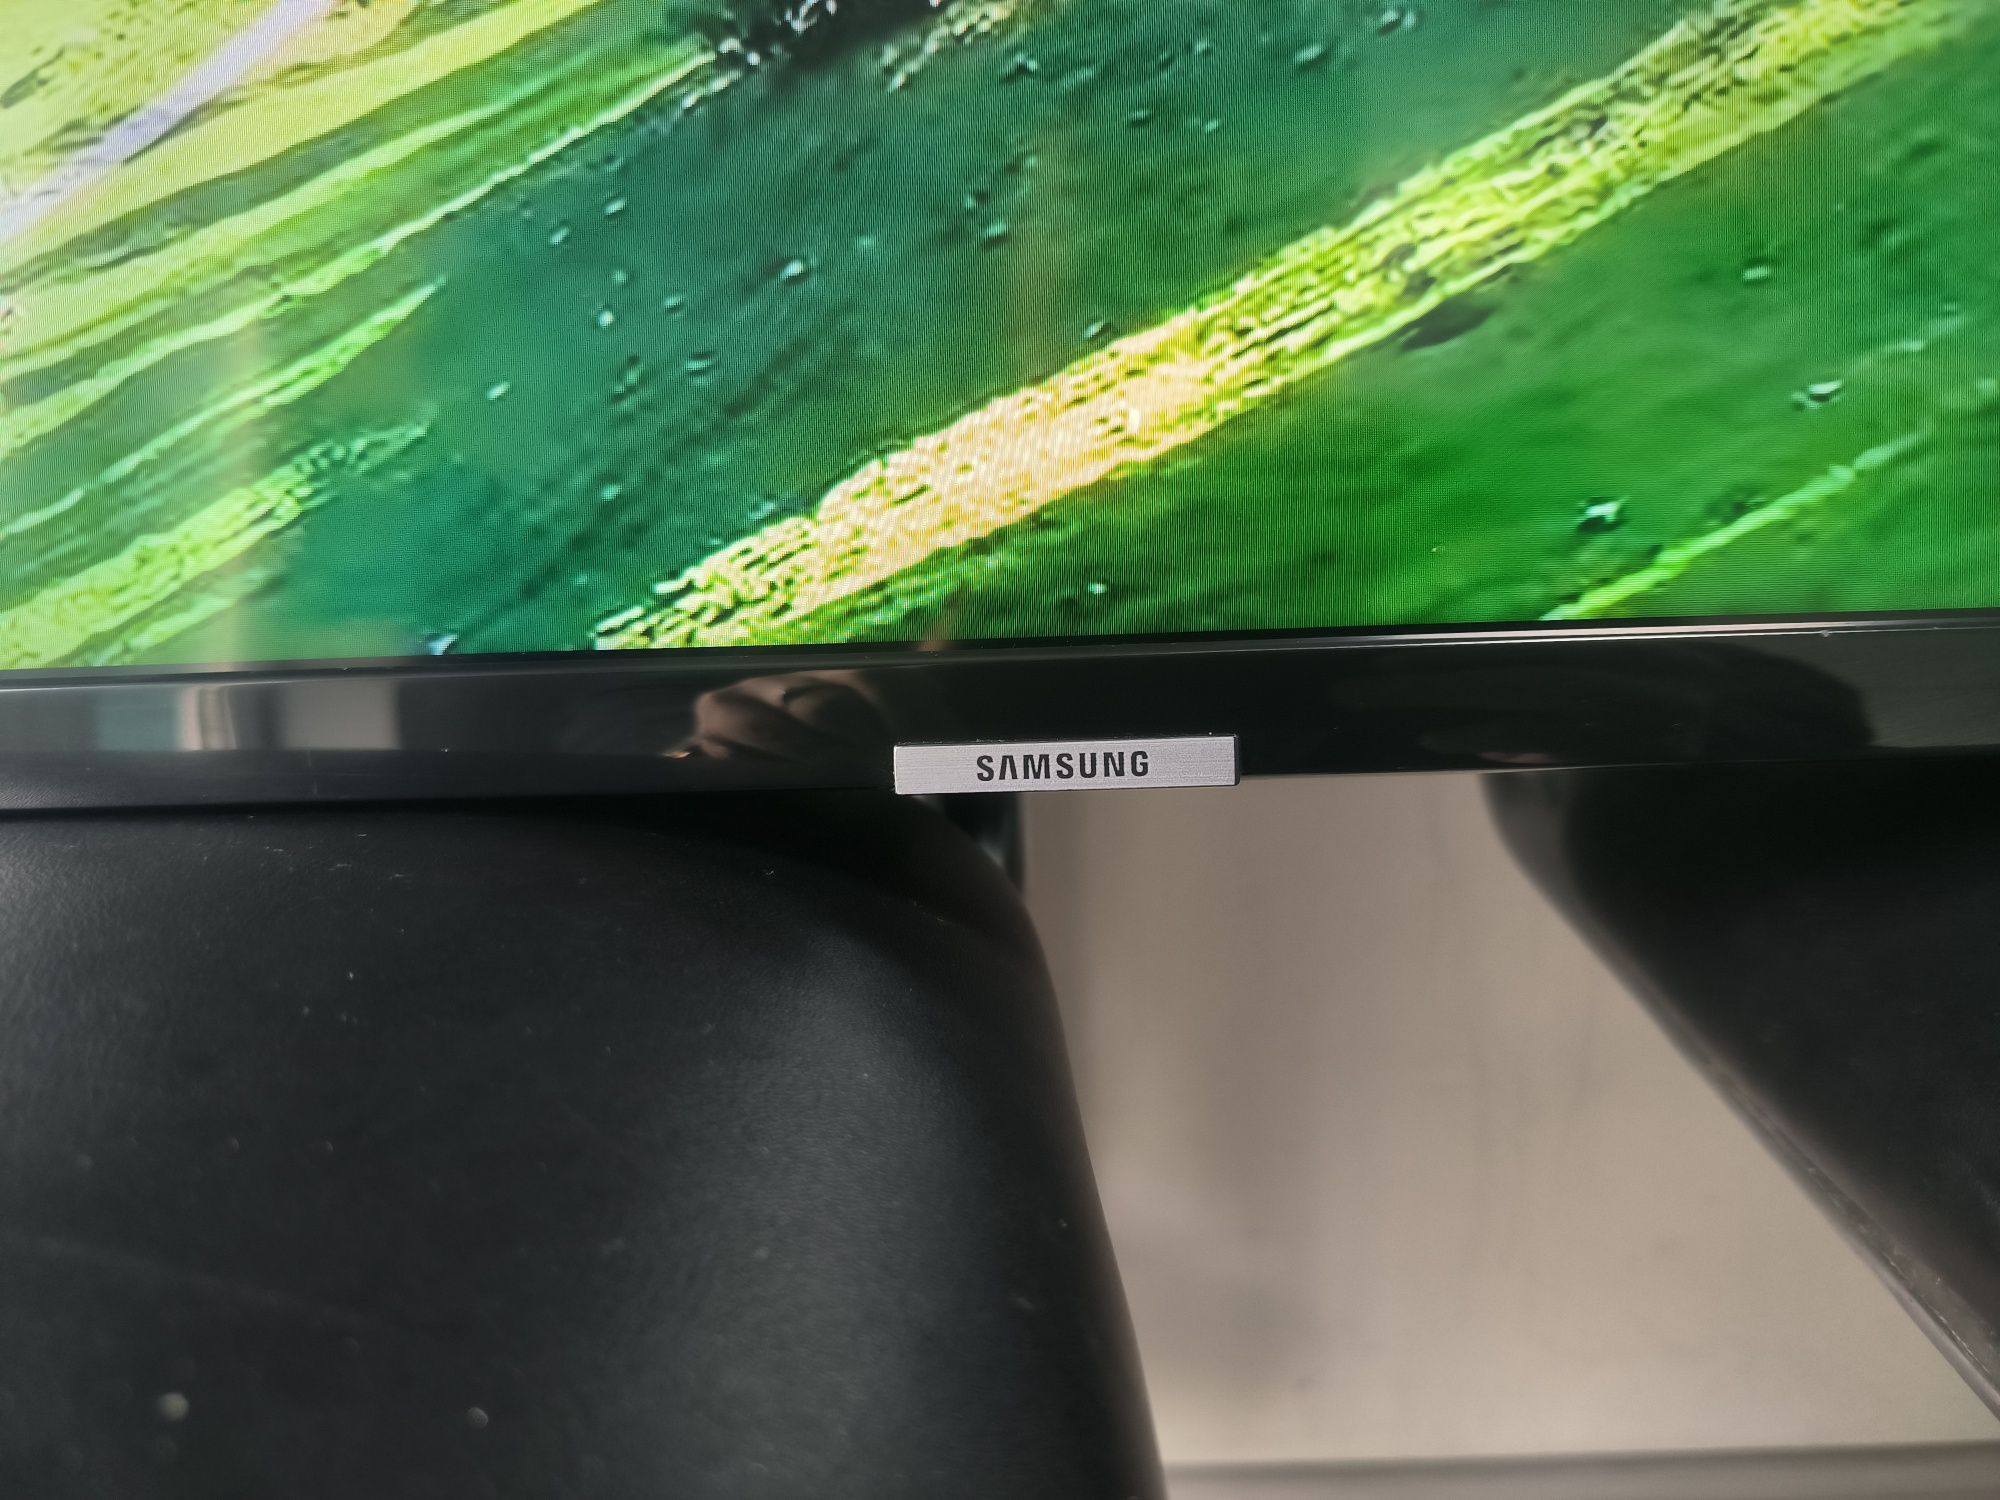 Телевизор Samsung UE50NU7002 4K 2019 год